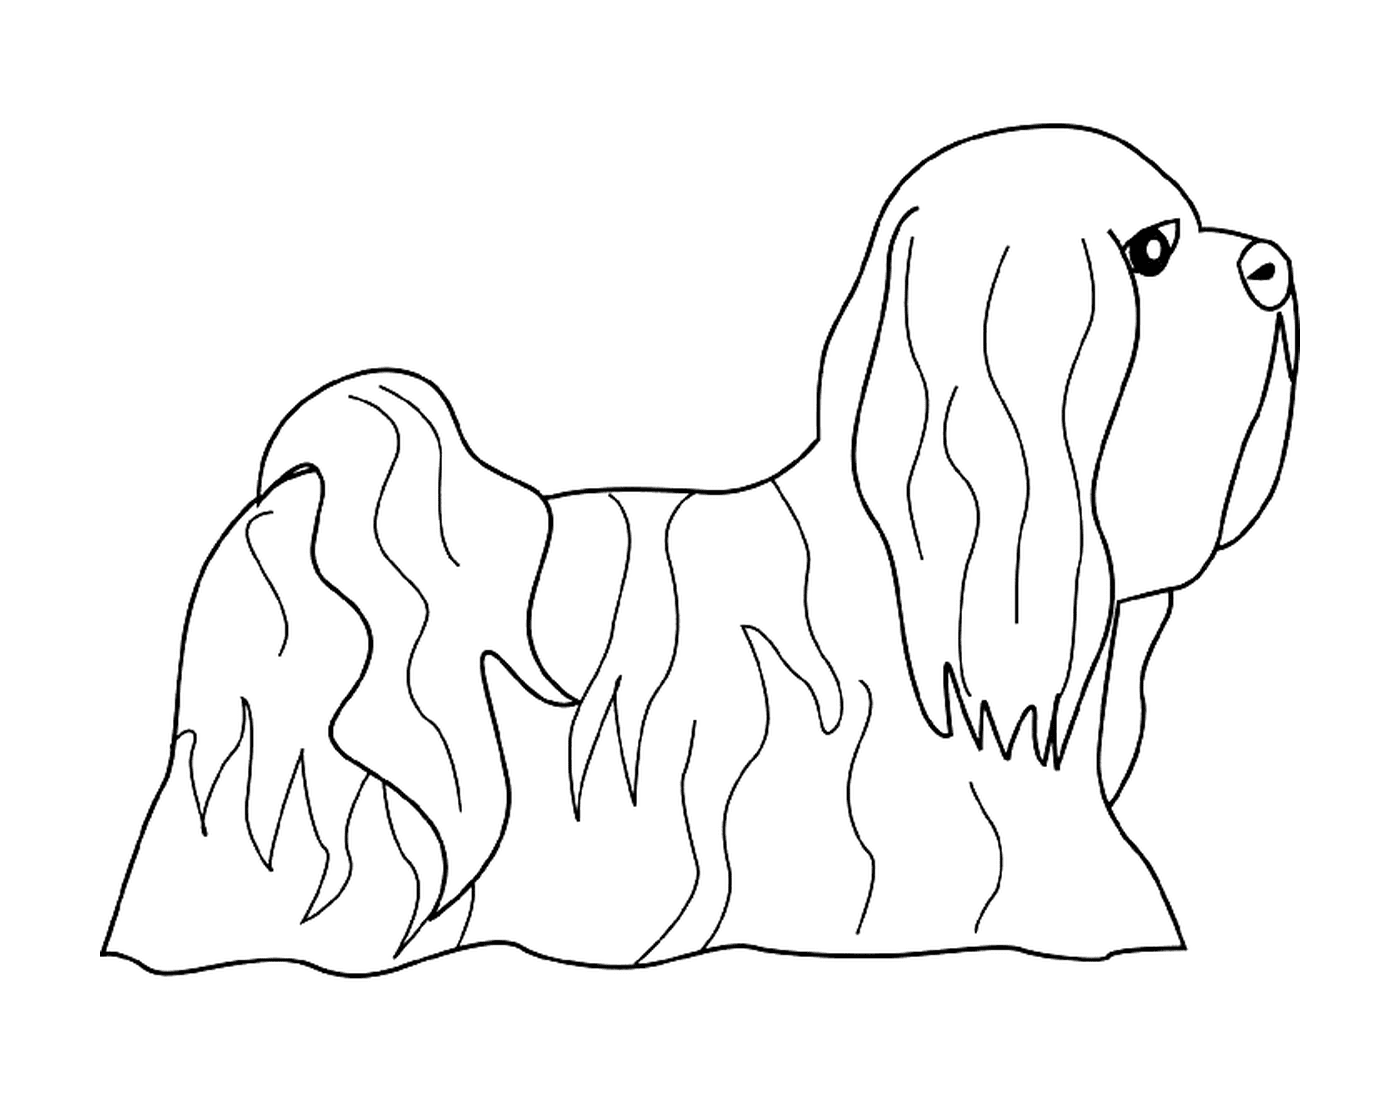  Un cane lhasa apso 